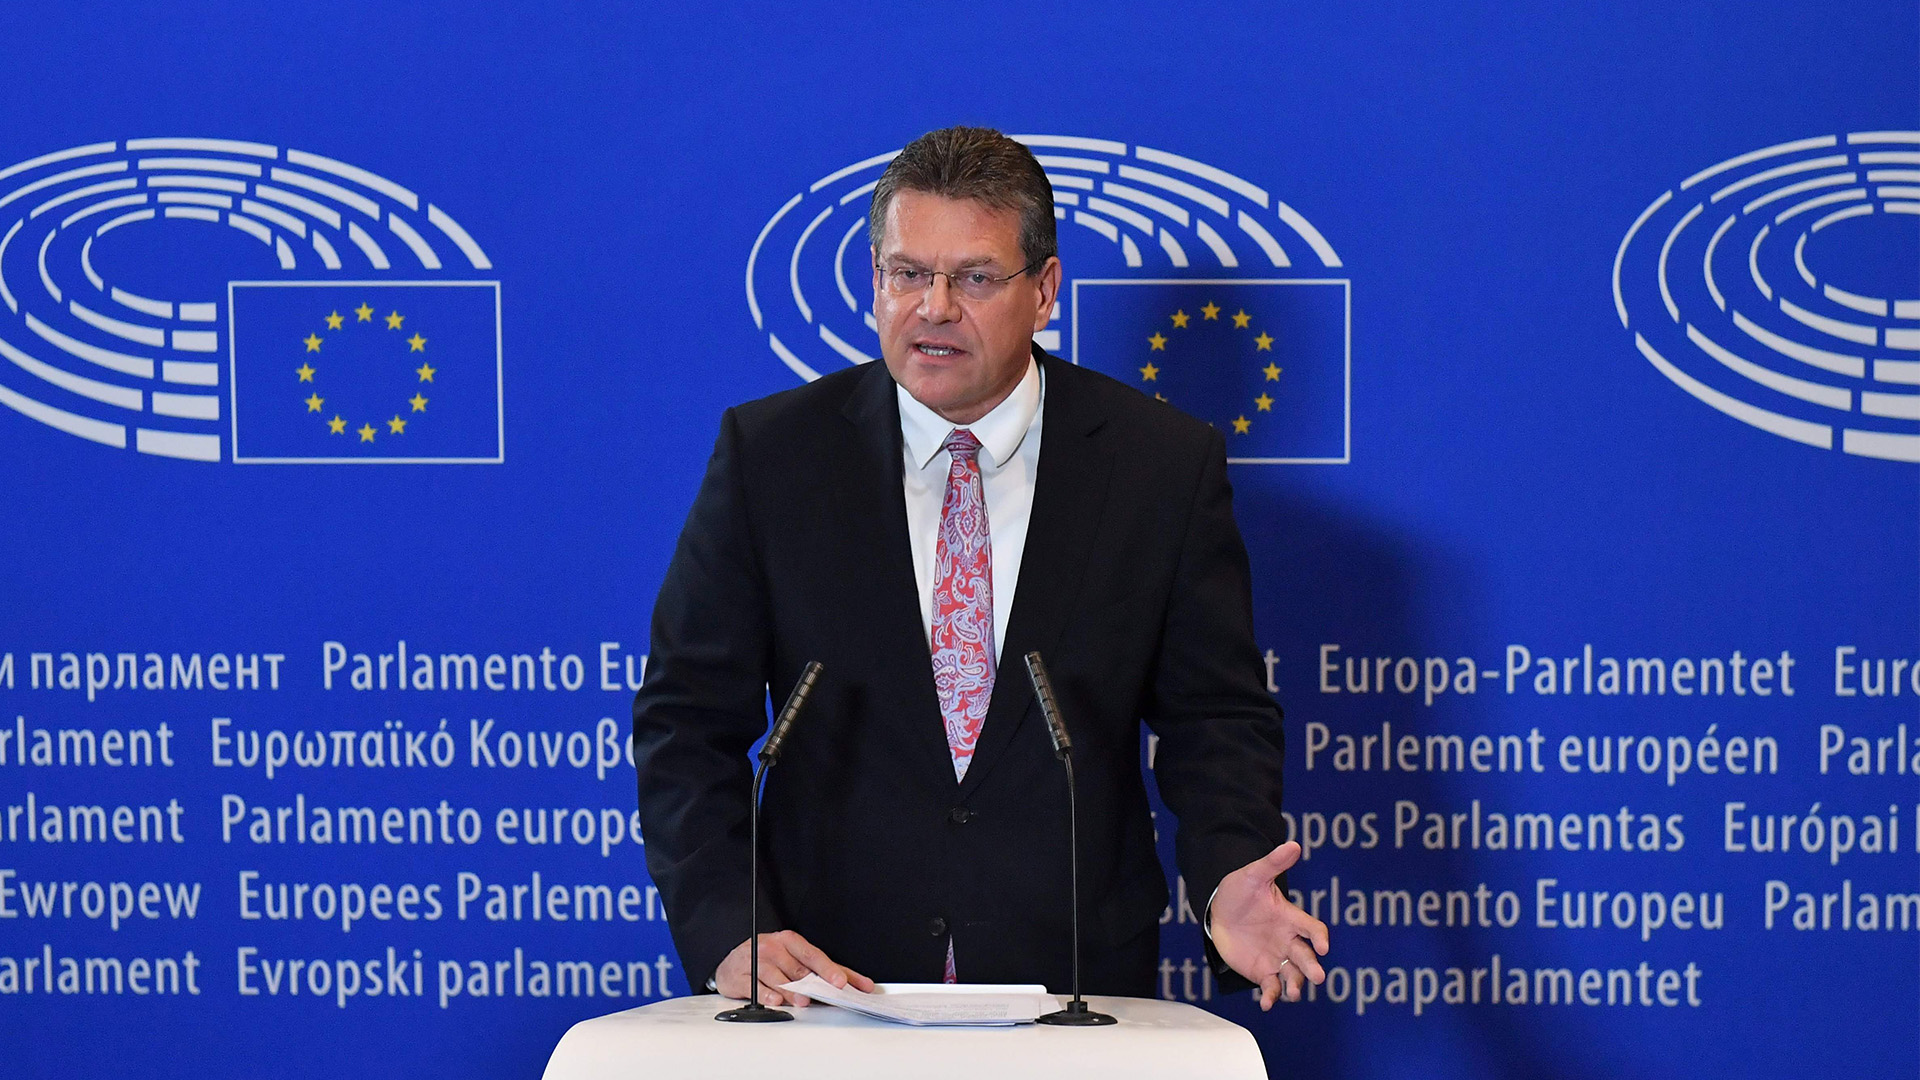 Der slowakische Sozialdemokrat Maros Sefcovic will 2019 neuer EU-Kommissionspräsident werden.